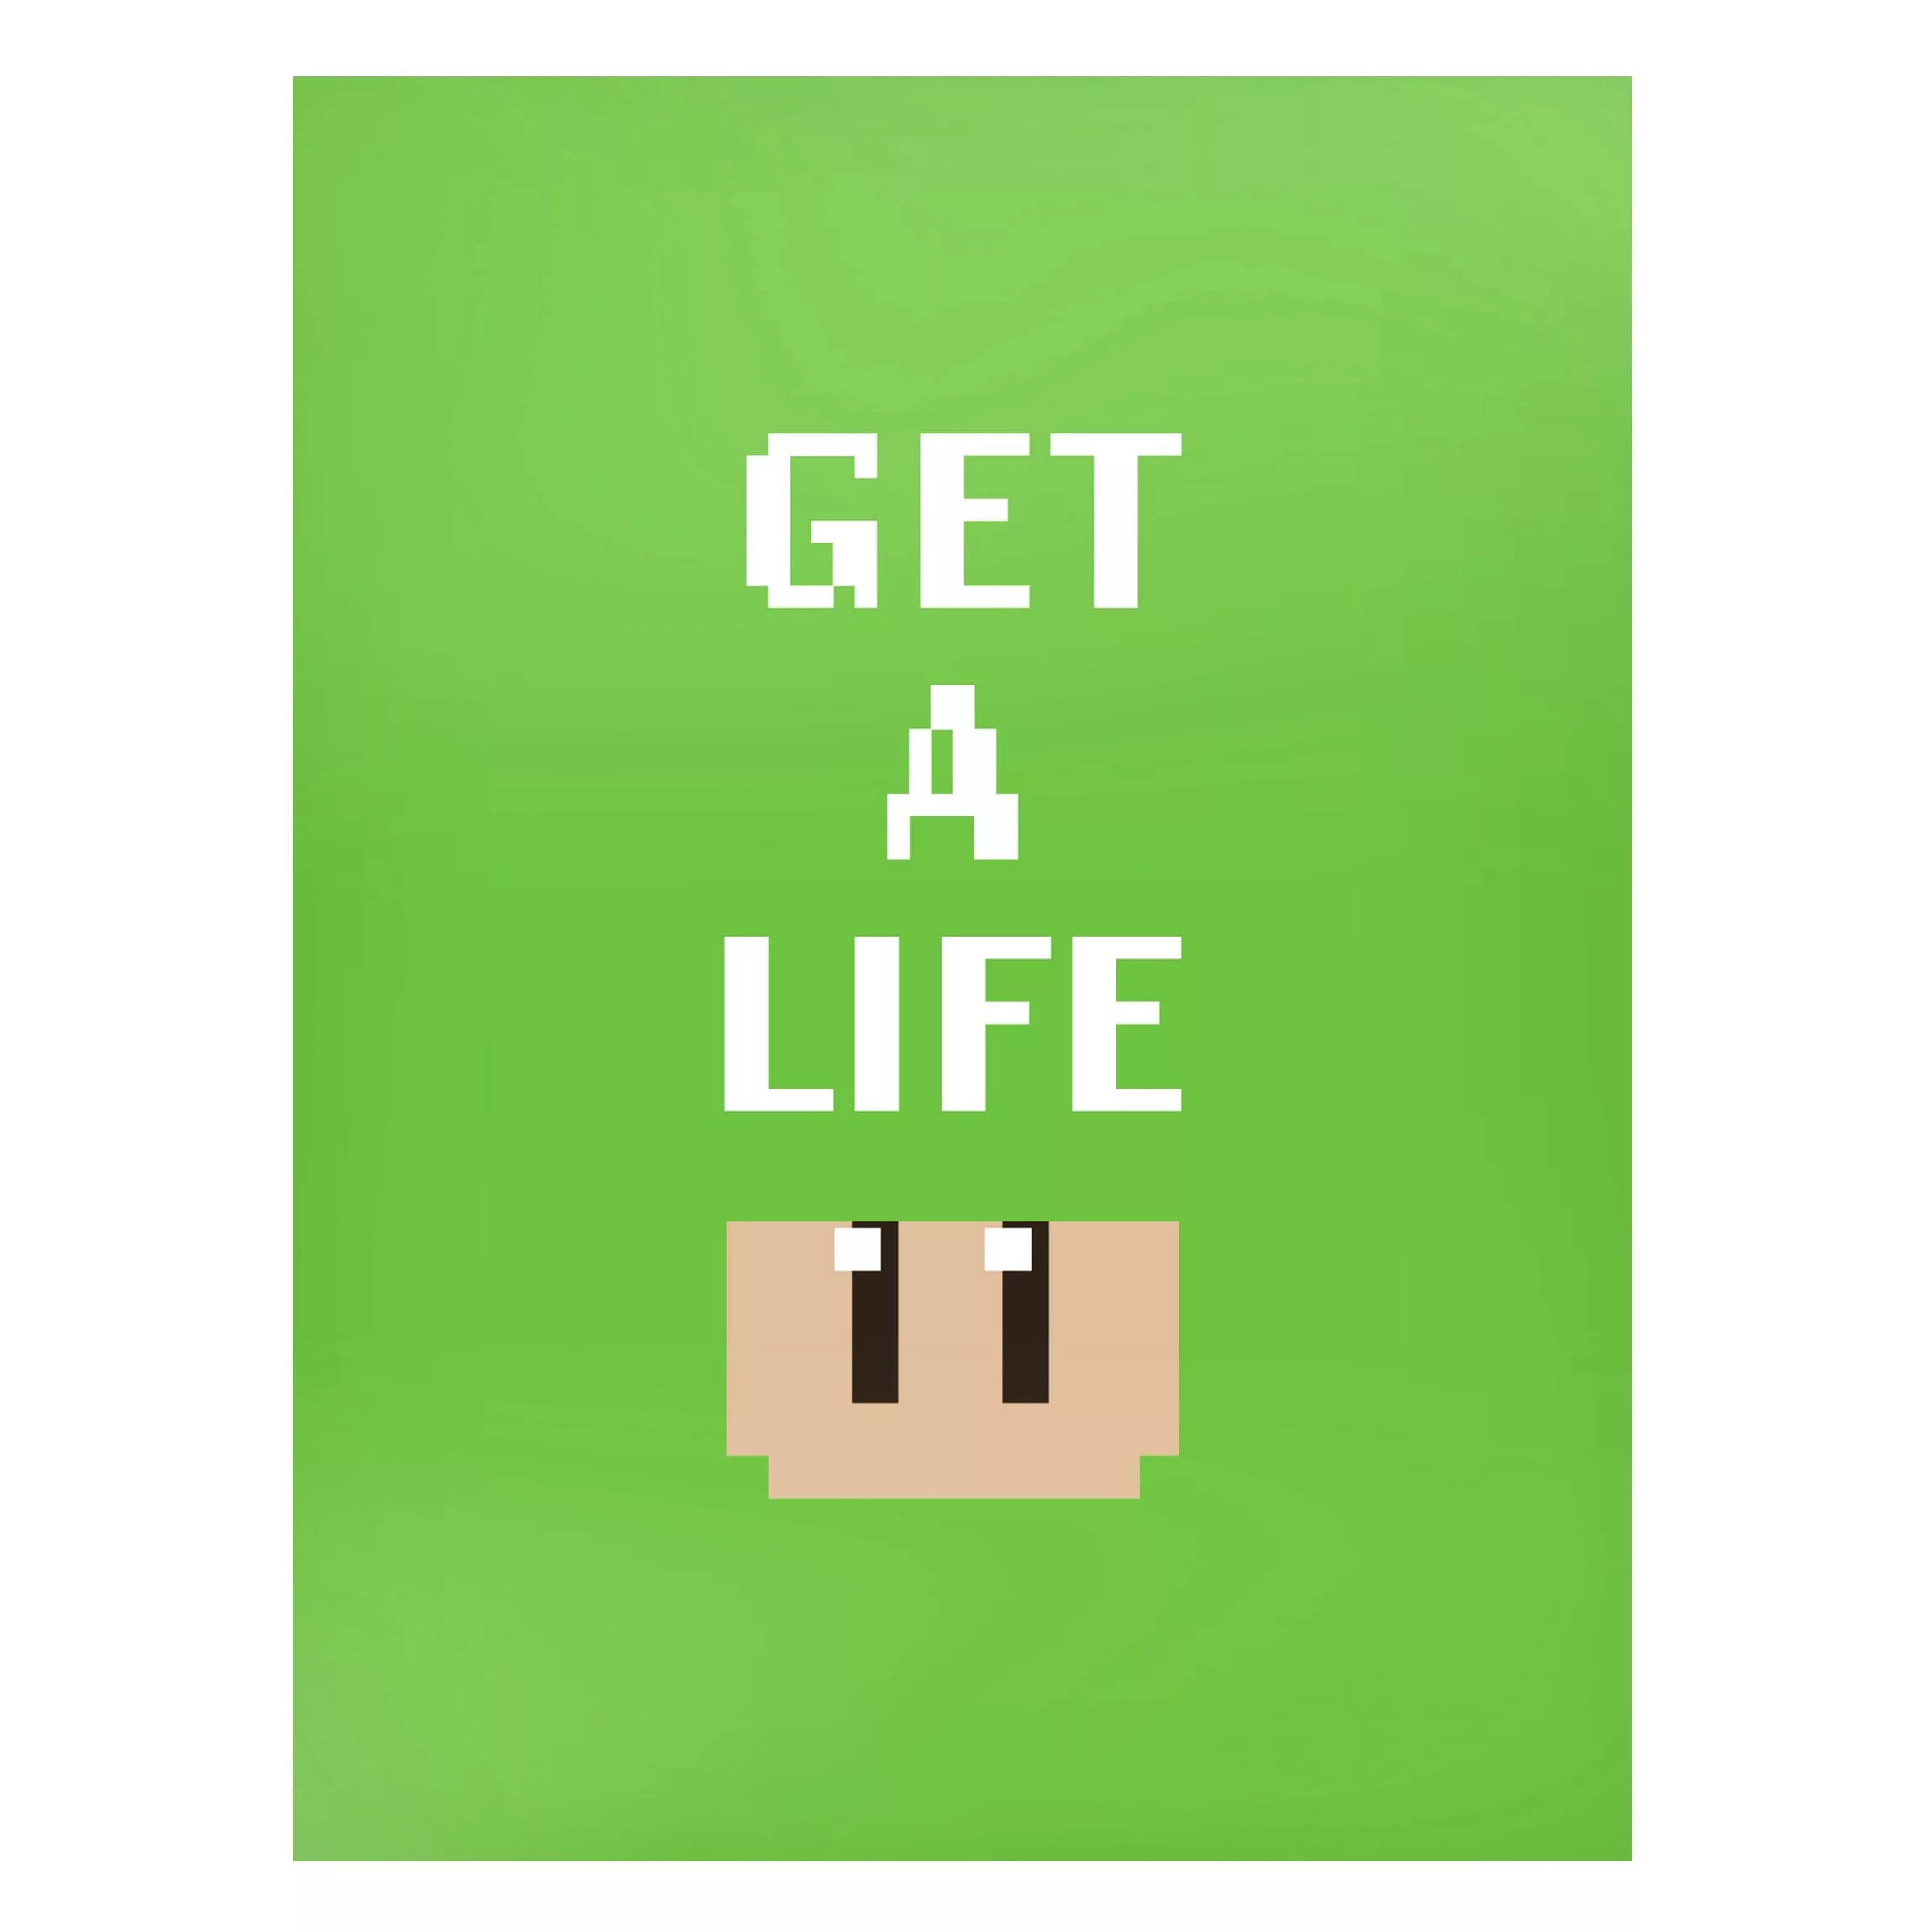 Magnettafel Video Game Text Get A Life In Green günstig online kaufen